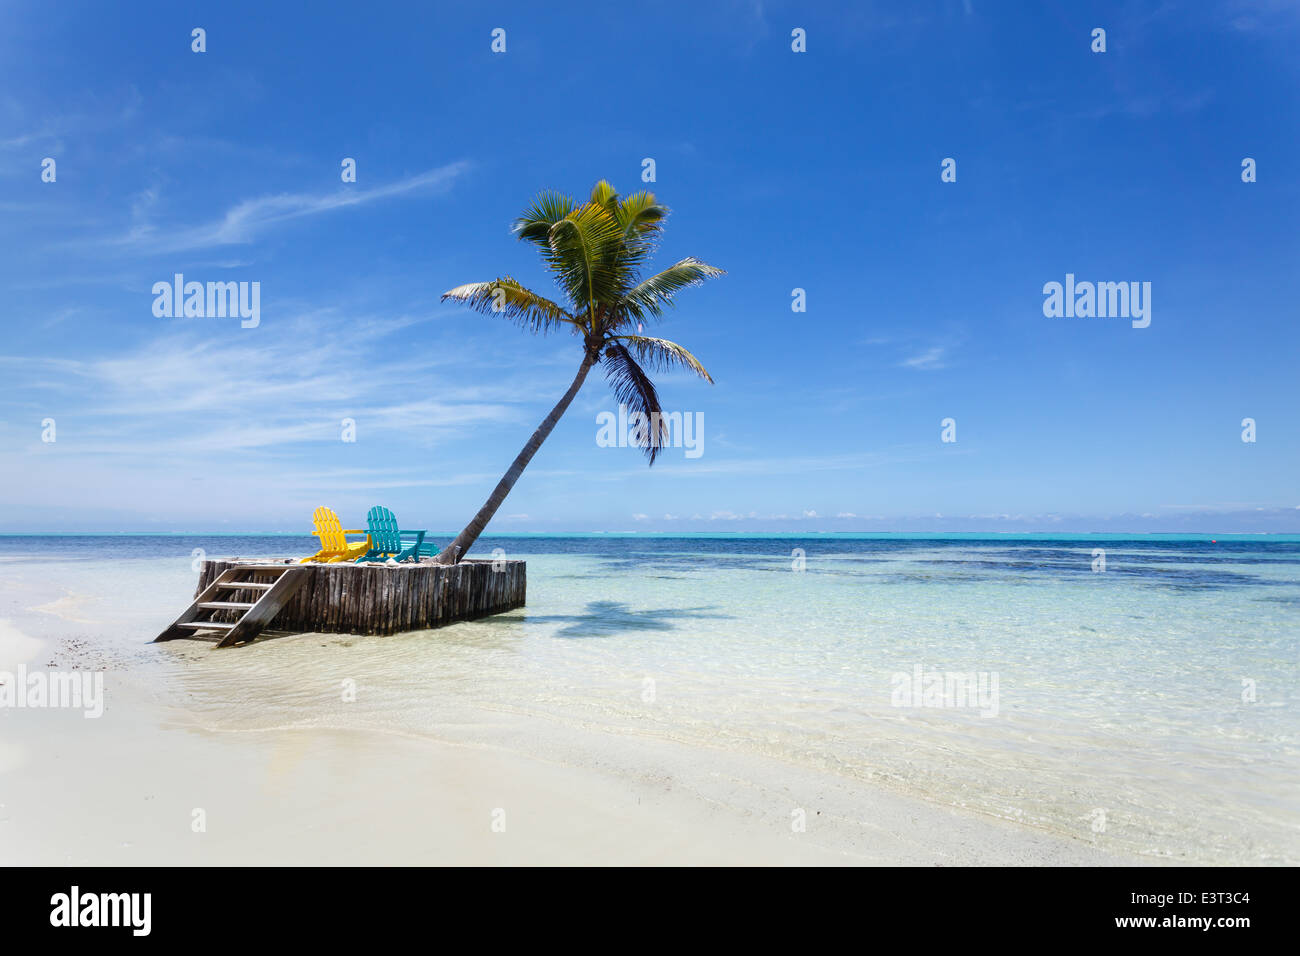 Plage paradisiaque tropicale relaxante isolée avec sable blanc, palmier et deux chaises de plage qui vous attendent Banque D'Images